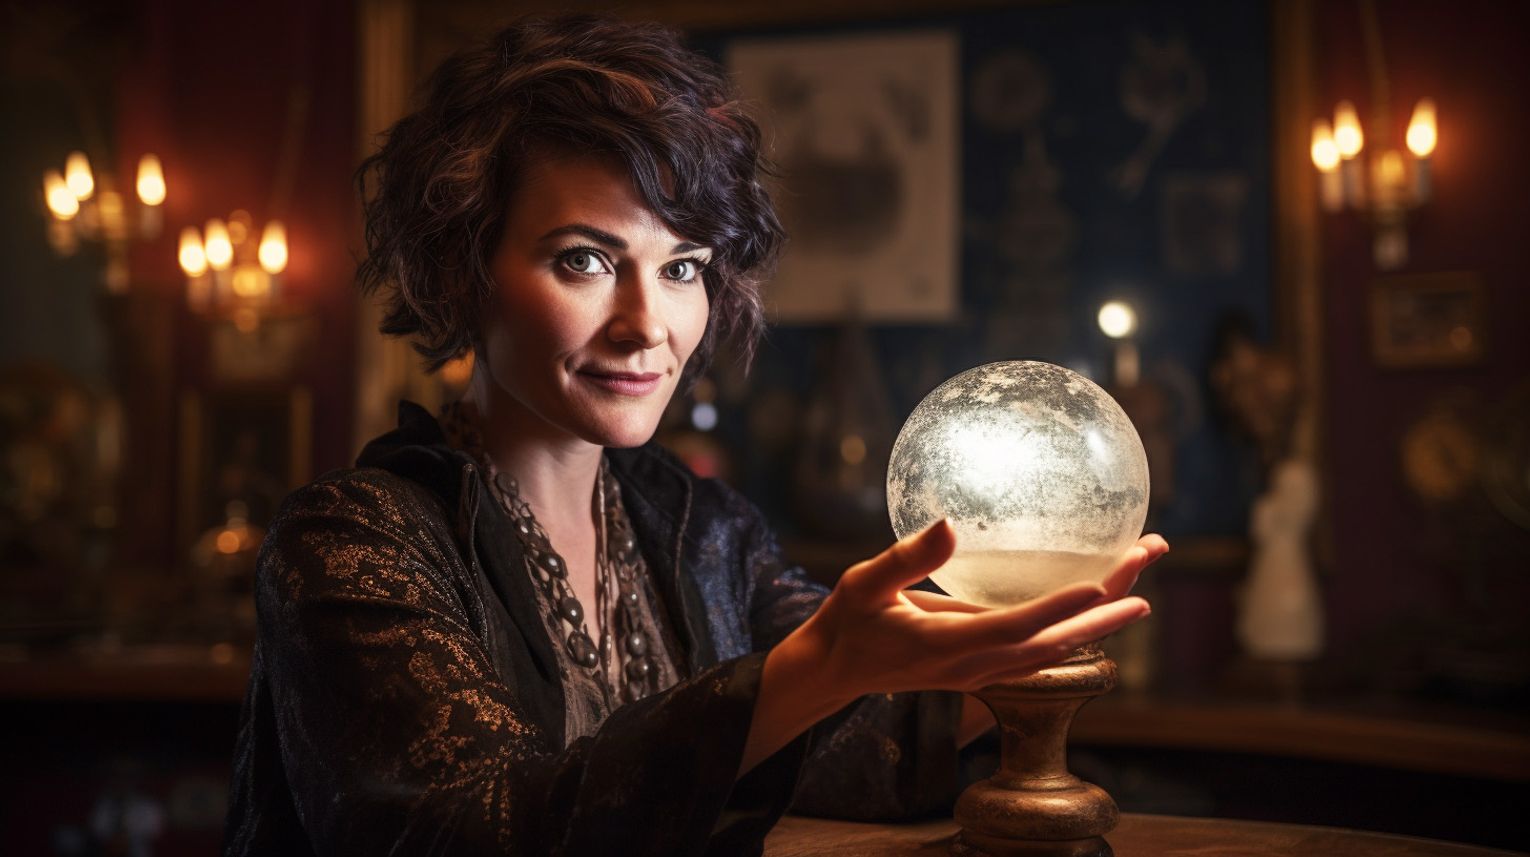 A Medium Reader holding a crystal ball